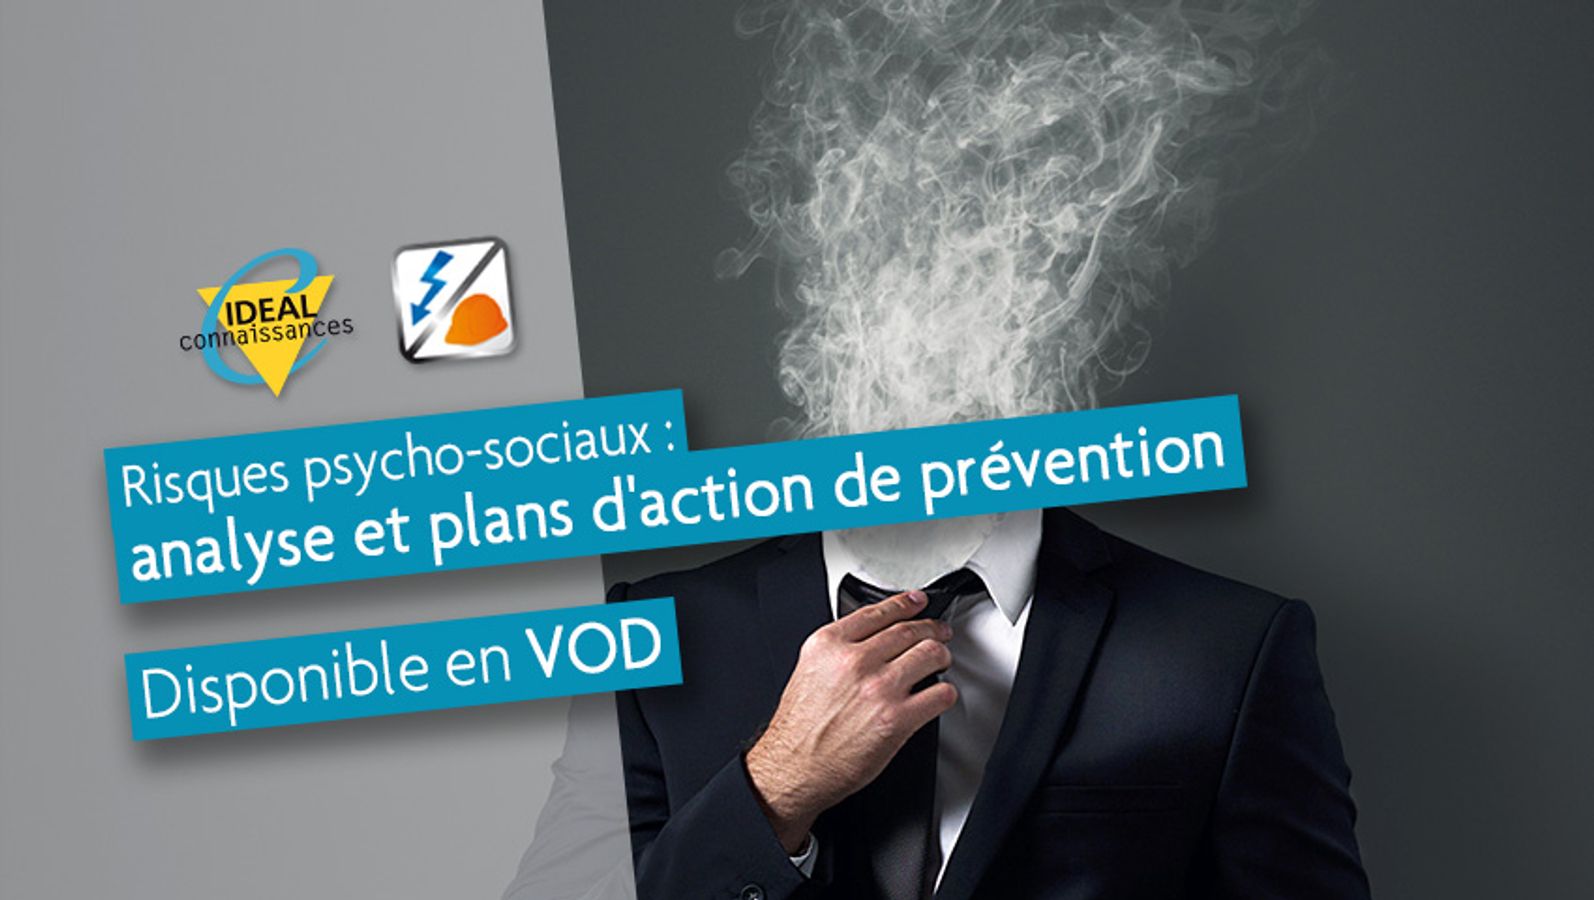 Risques psycho-sociaux : analyse et plans d'action de prévention